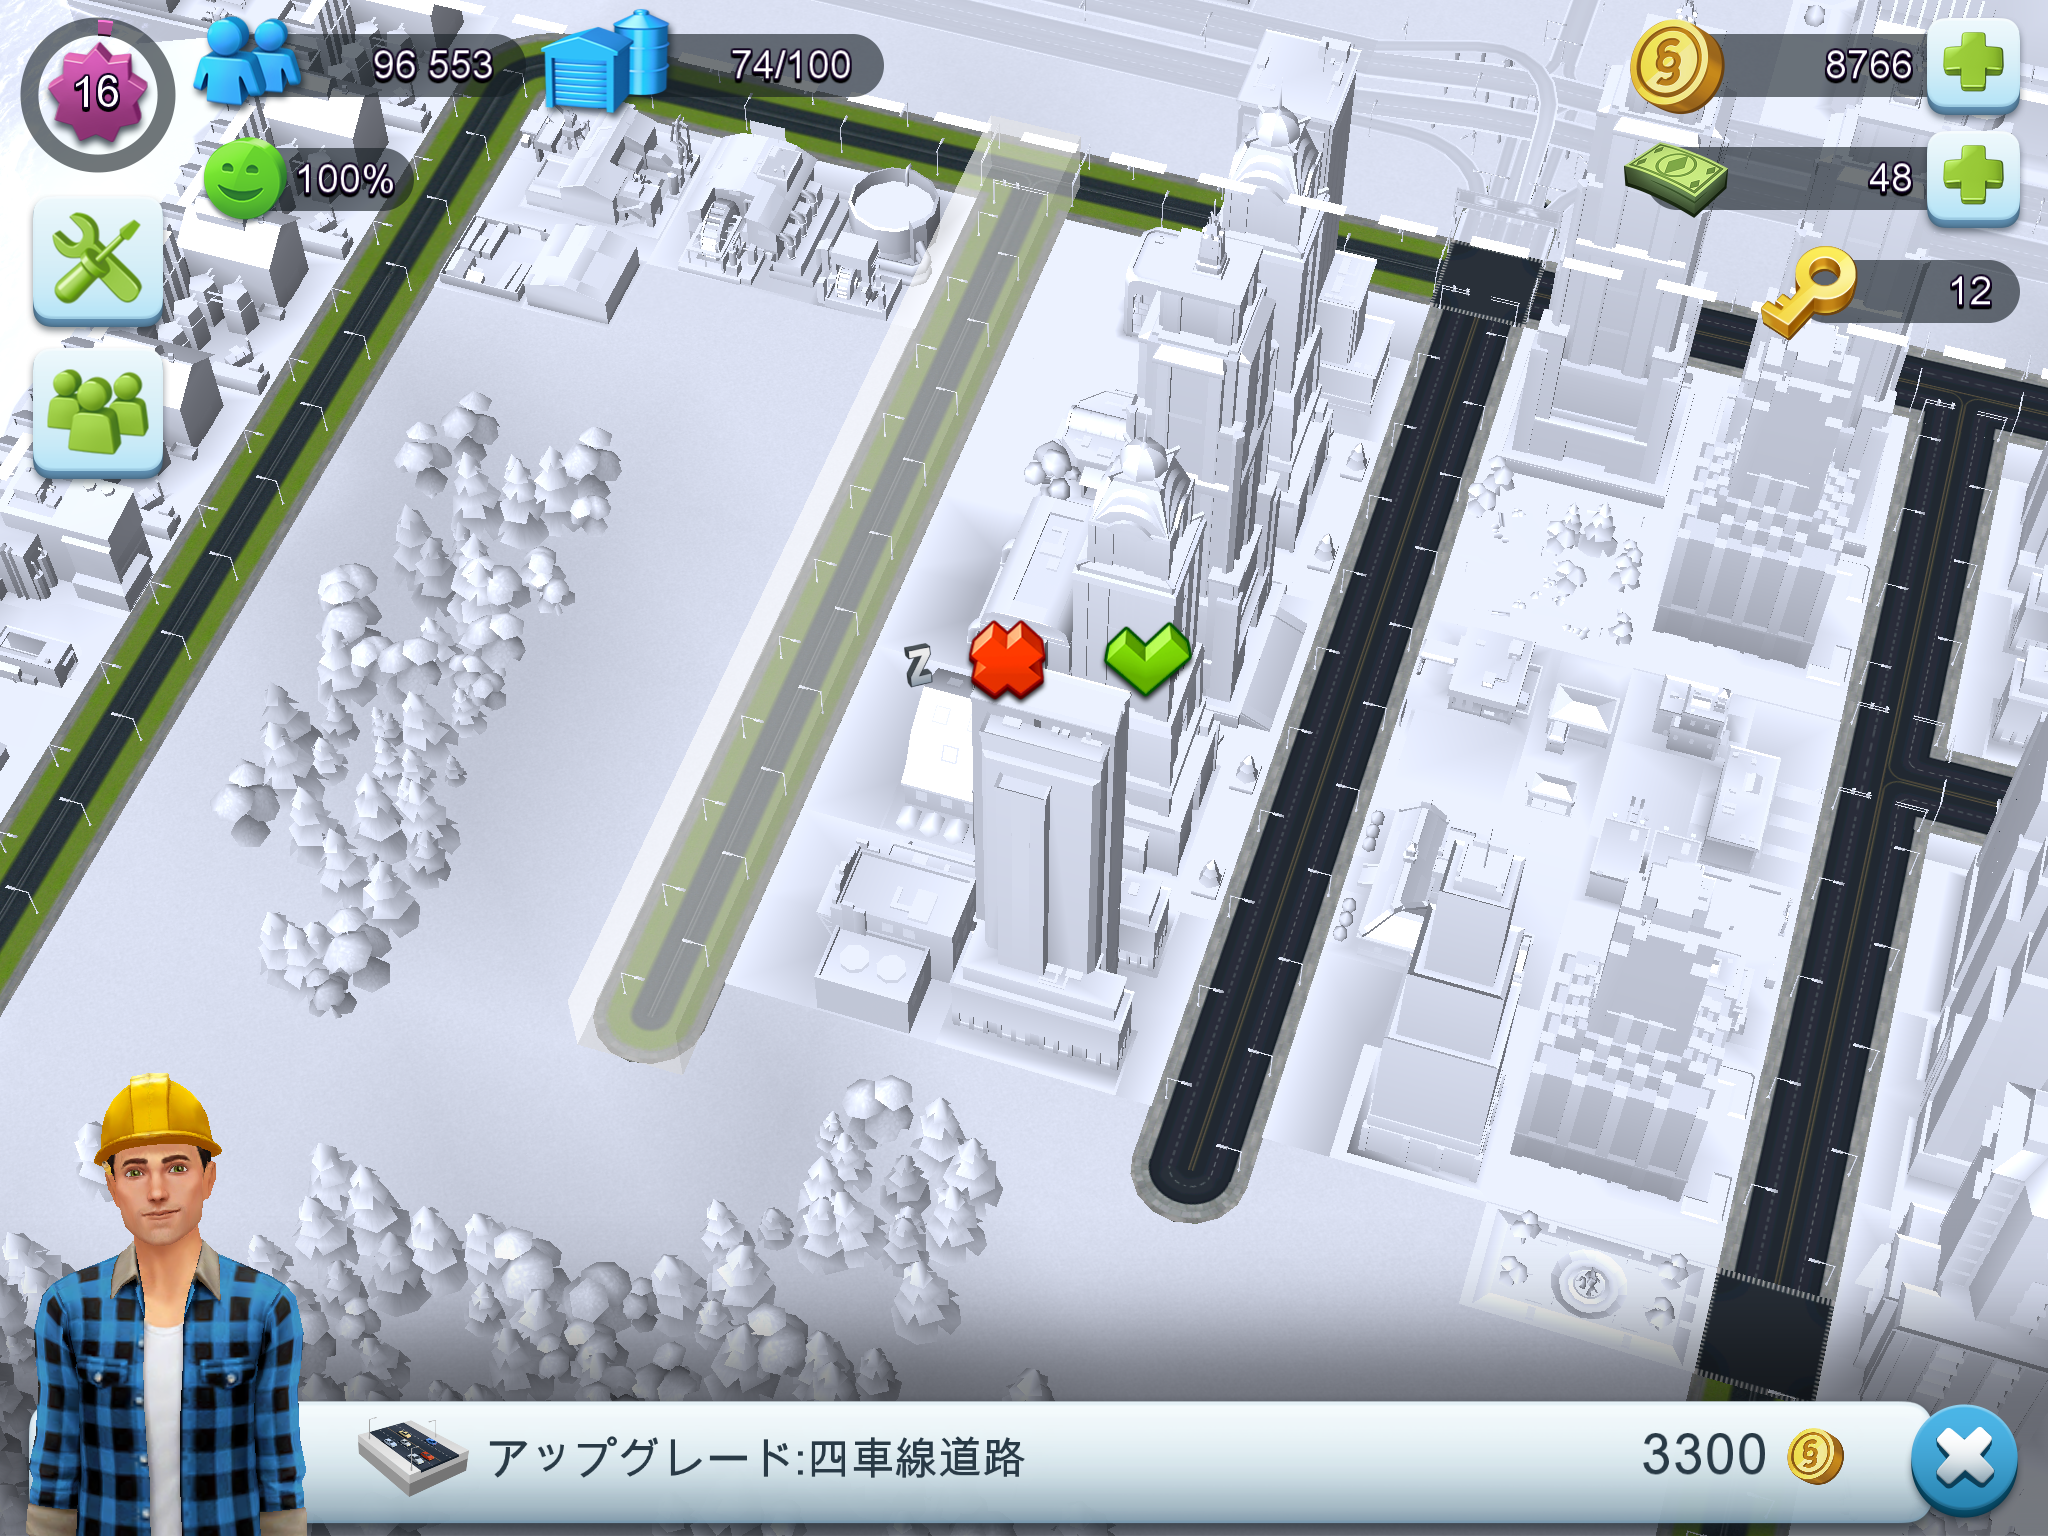 Simcity Buildit第4回 お金の力で都市を開拓したら 住民がもがき苦しみ始めました Boom App Games